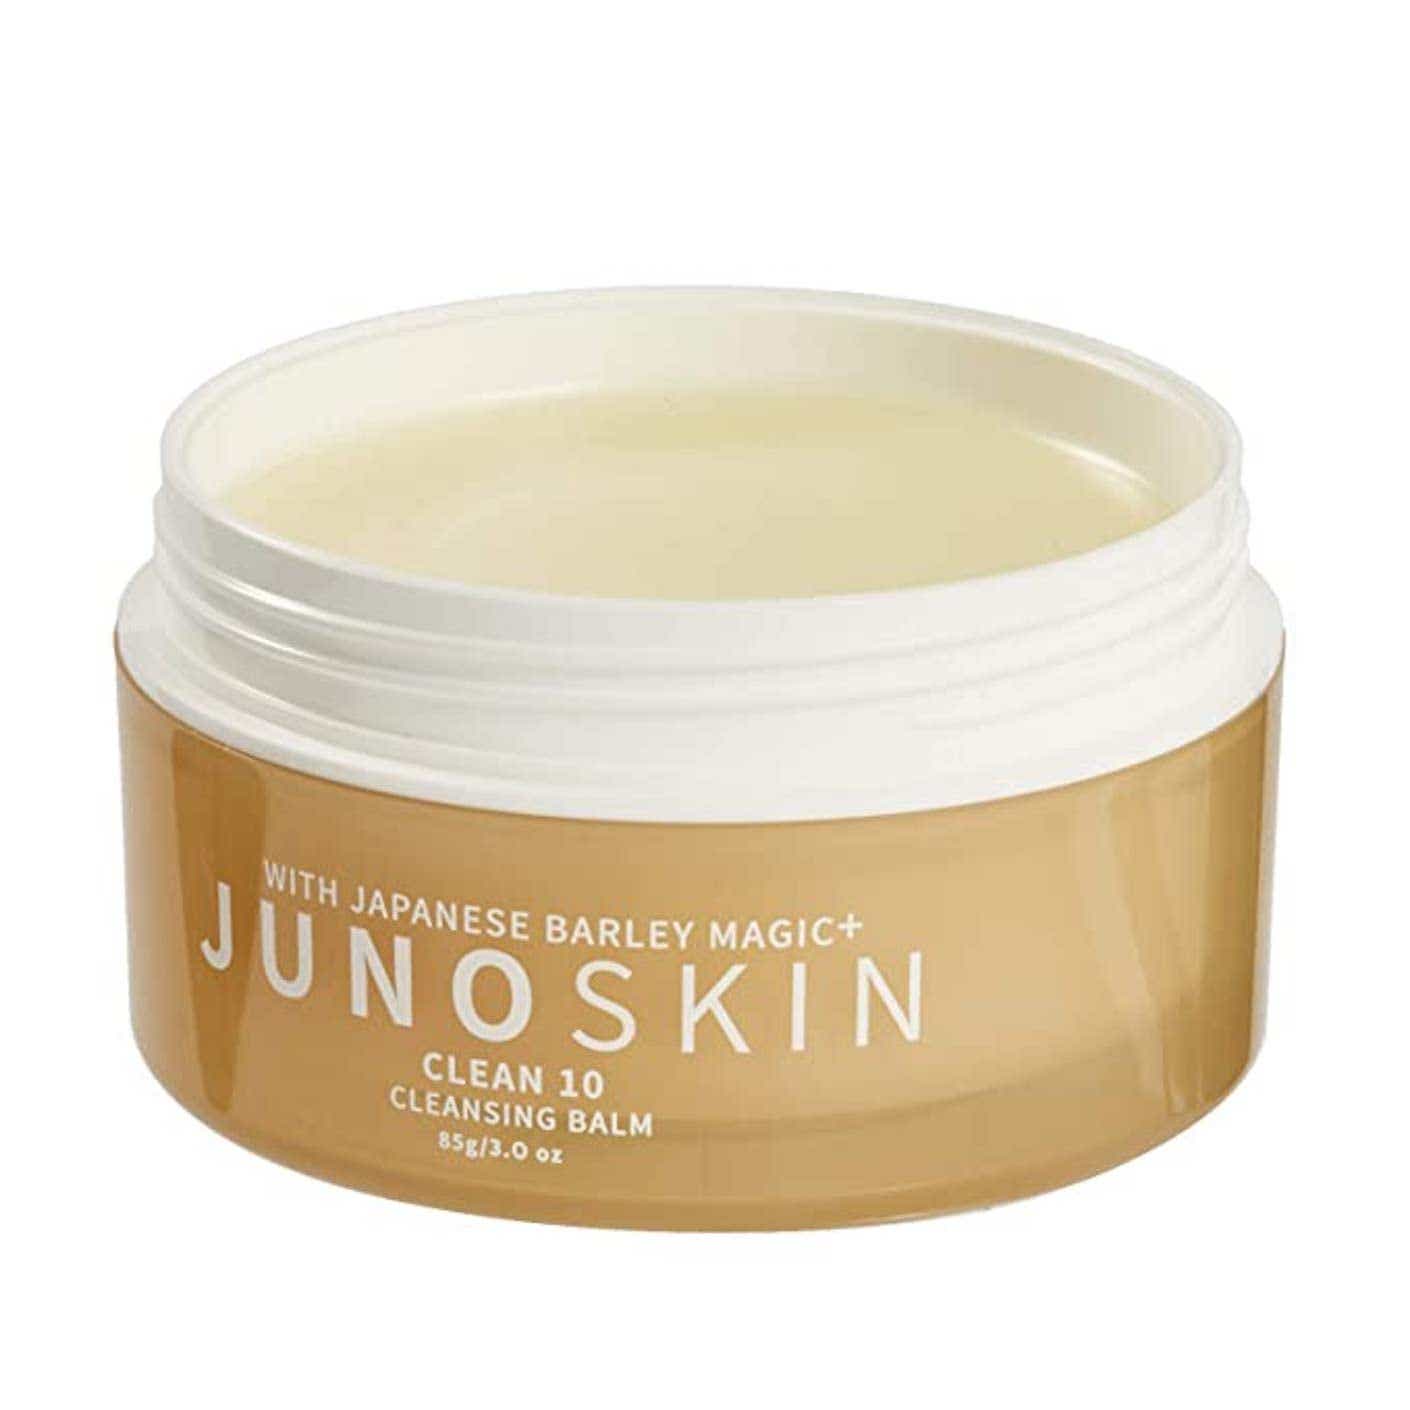 jar of Juno Skin cream